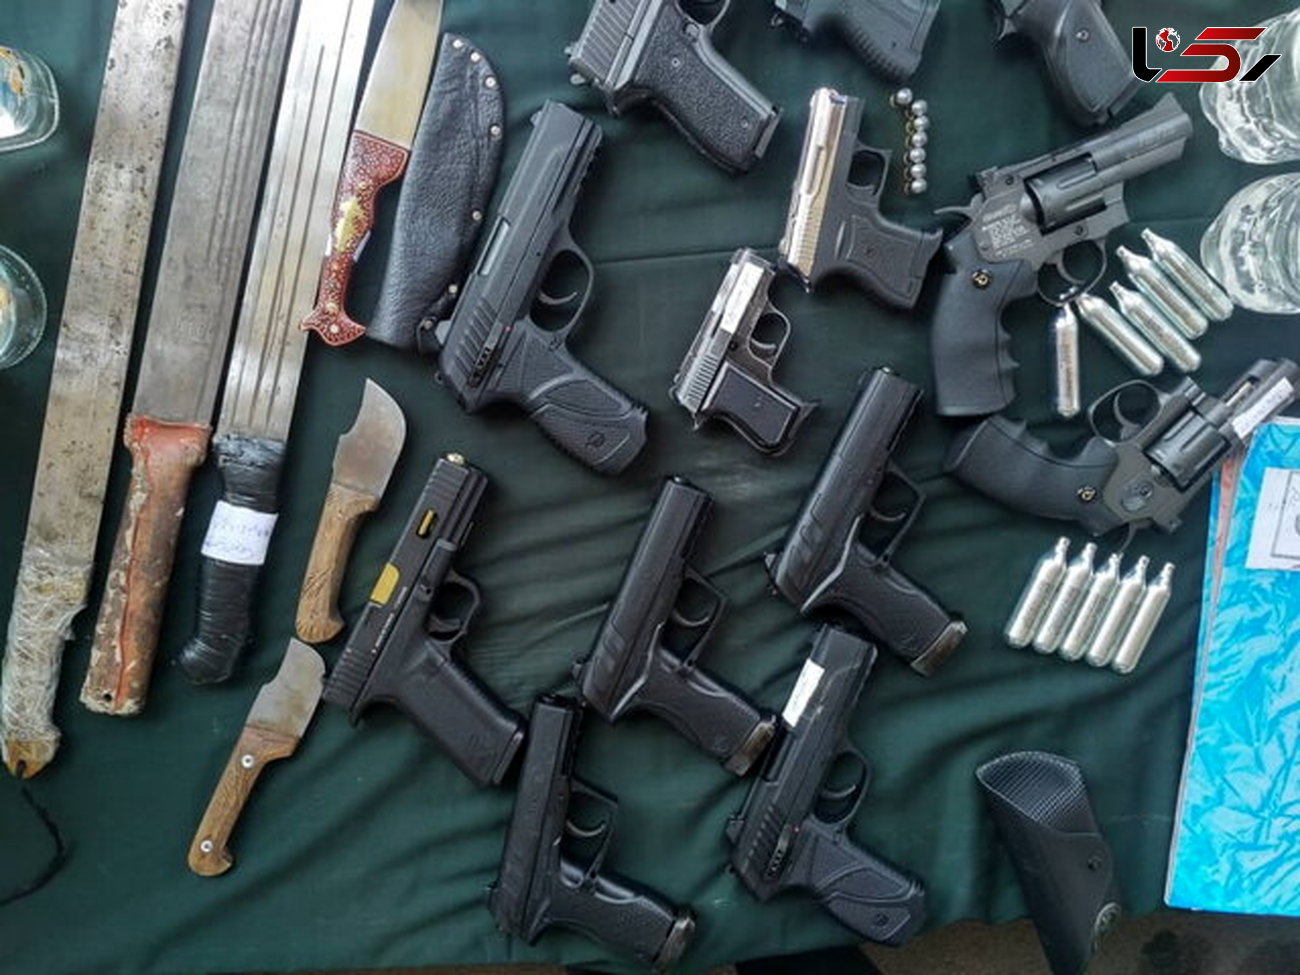 فروشندگان سلاح در تهران دستگیر شدند.